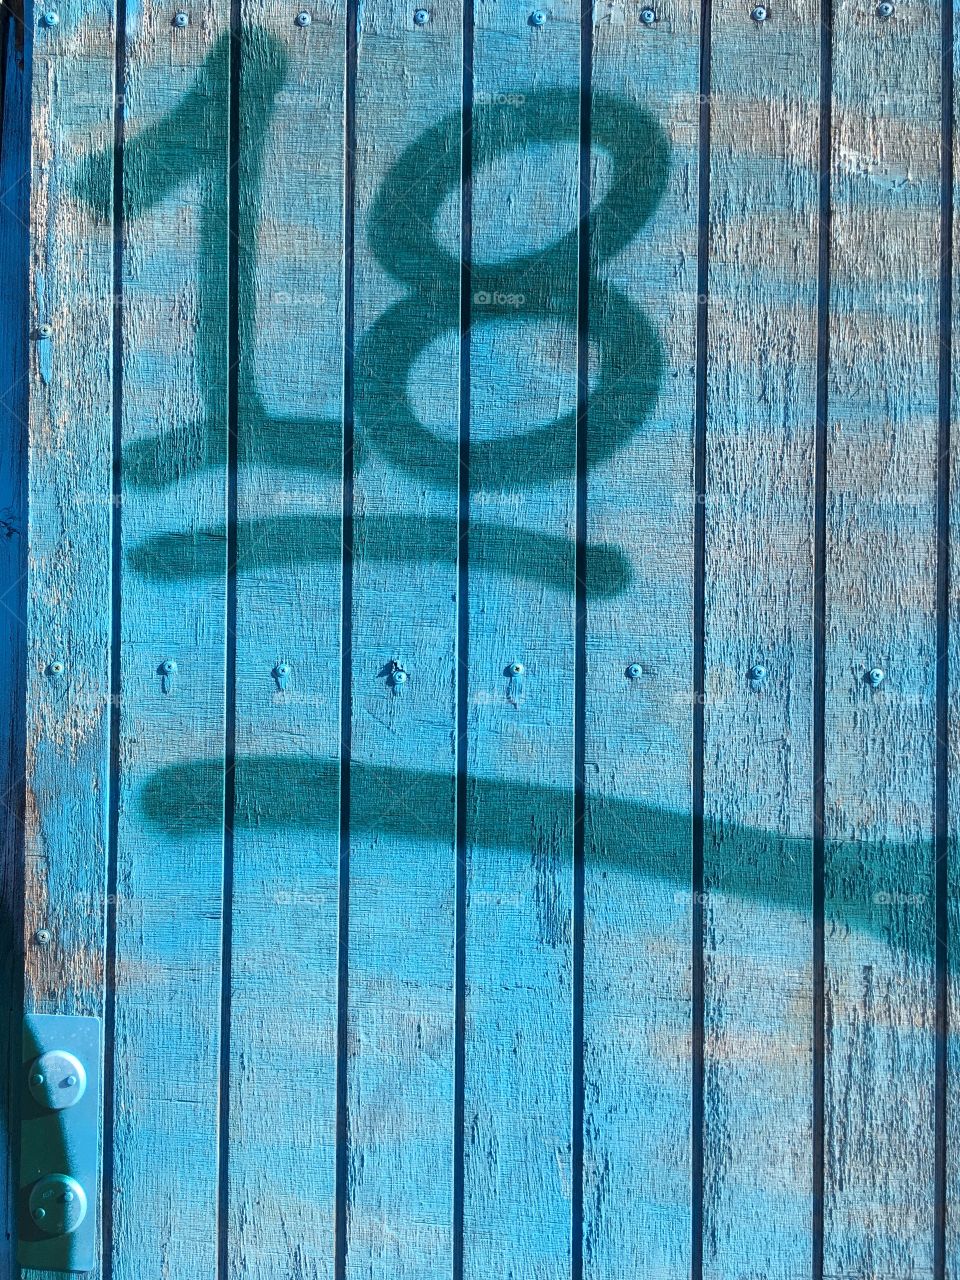 Blue door number 18